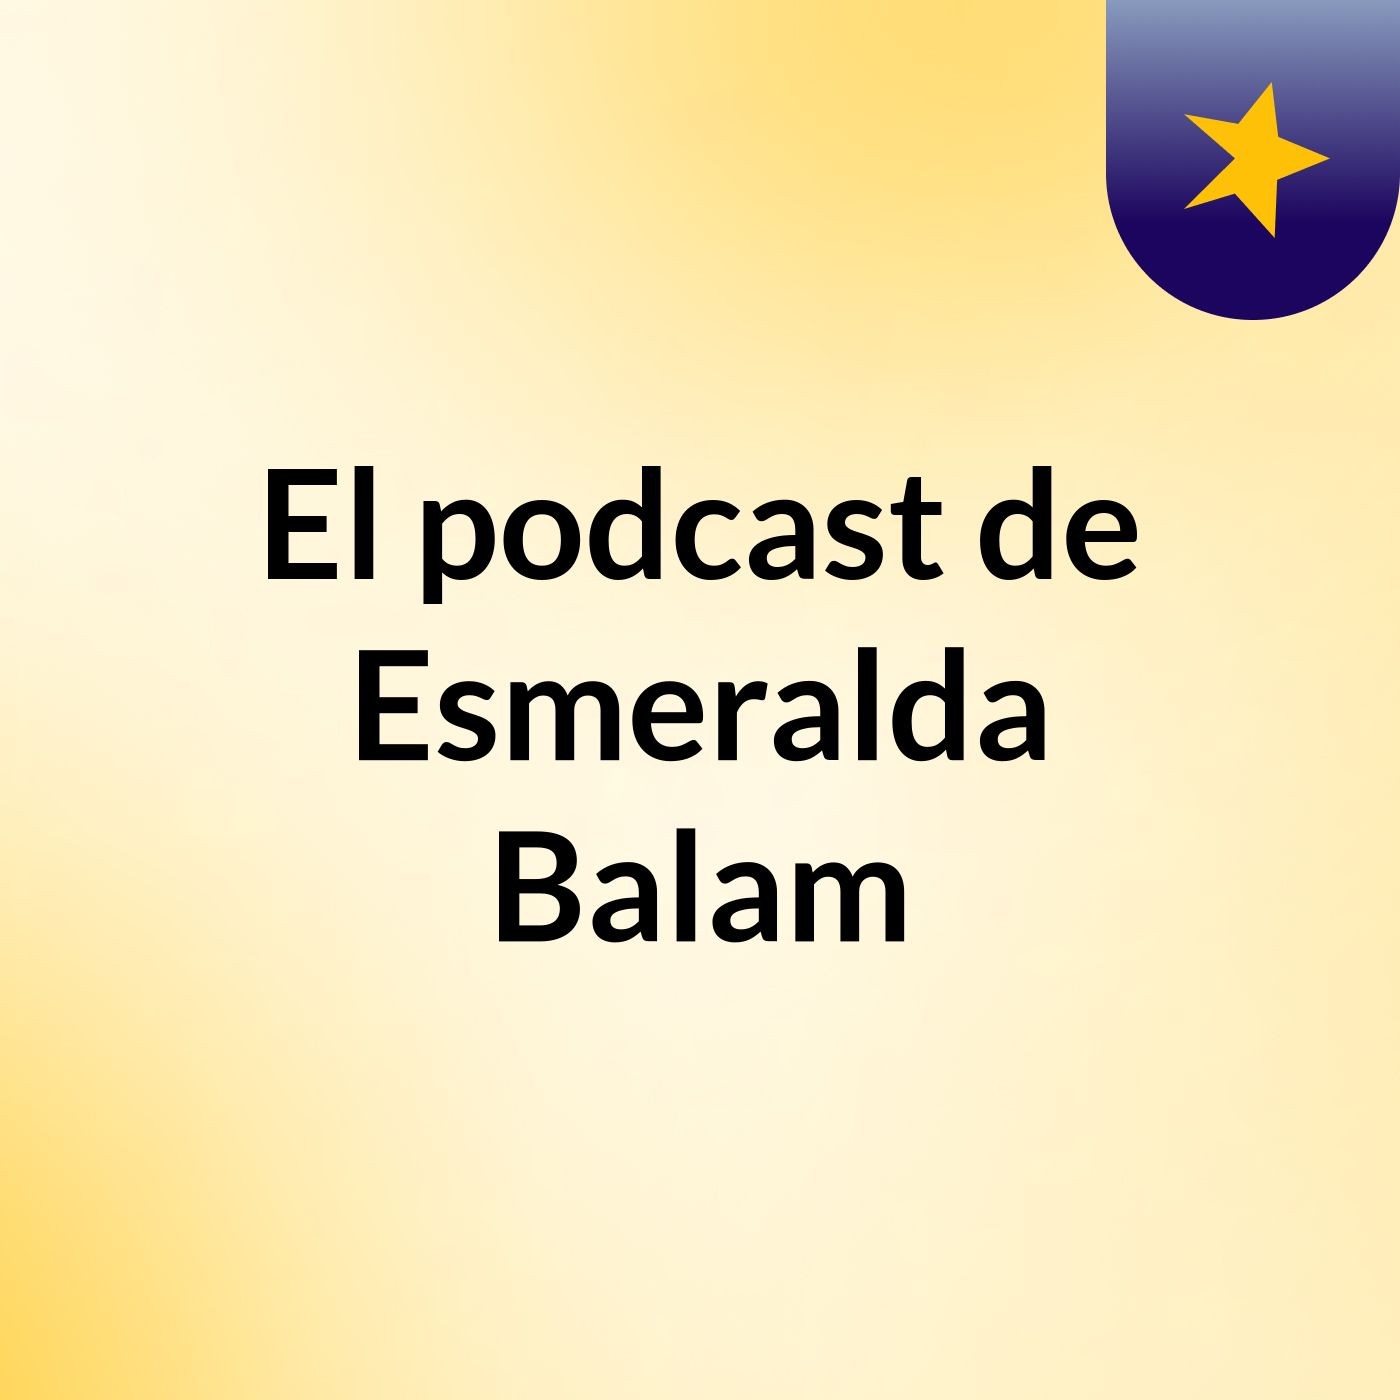 El podcast de Esmeralda Balam